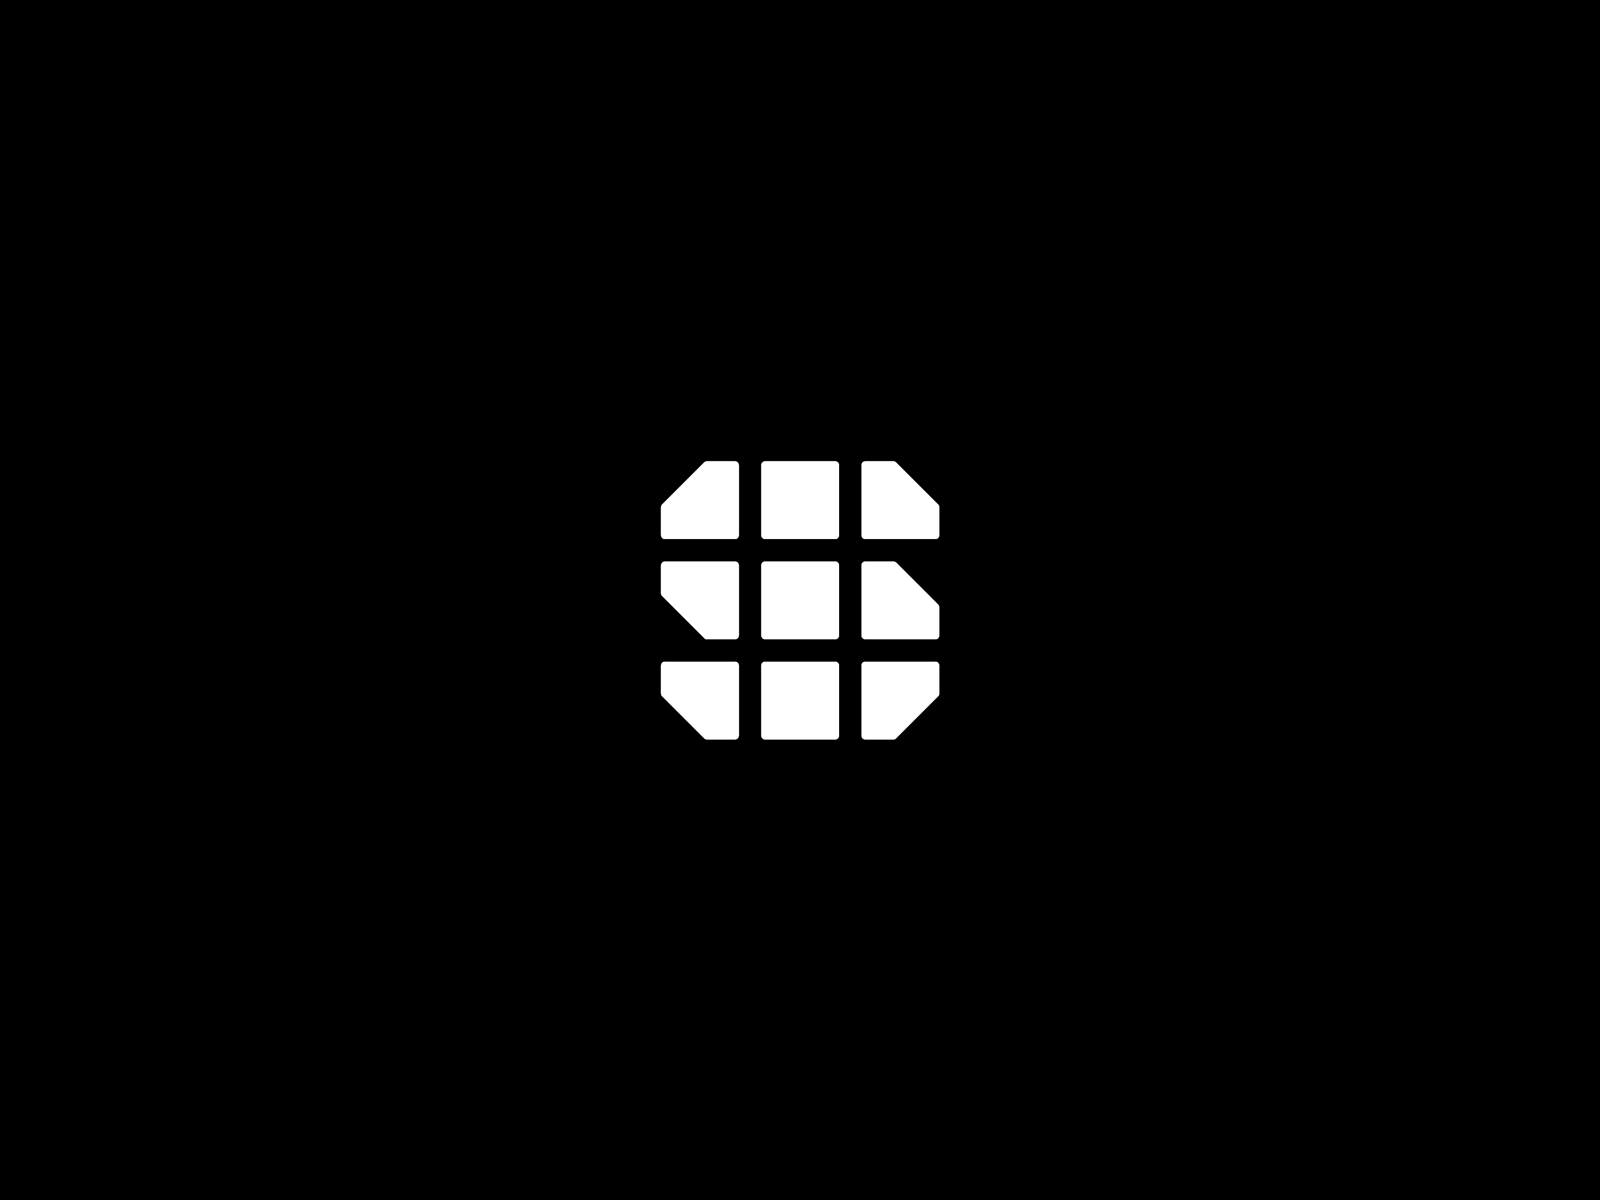 Logomark Design #14 art black branding castle design flag flat icon illustrator logo minimal rocket vector